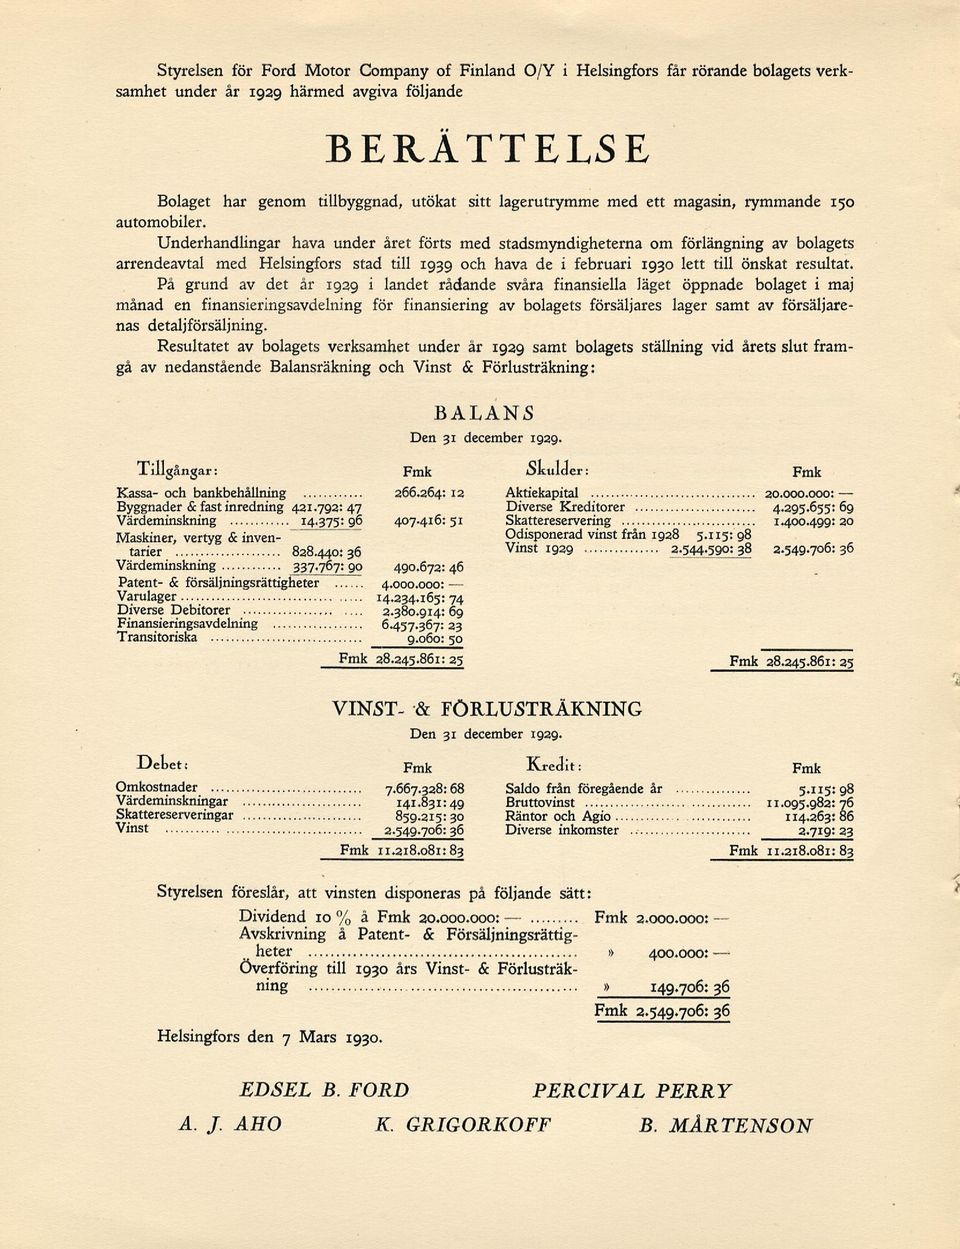 Underhandlingar hava under året förts med stadsmyndigheterna om förlängning av bolagets arrendeavtal med Helsingfors stad till 1939 och hava de i februari 1930 lett till önskat resultat.